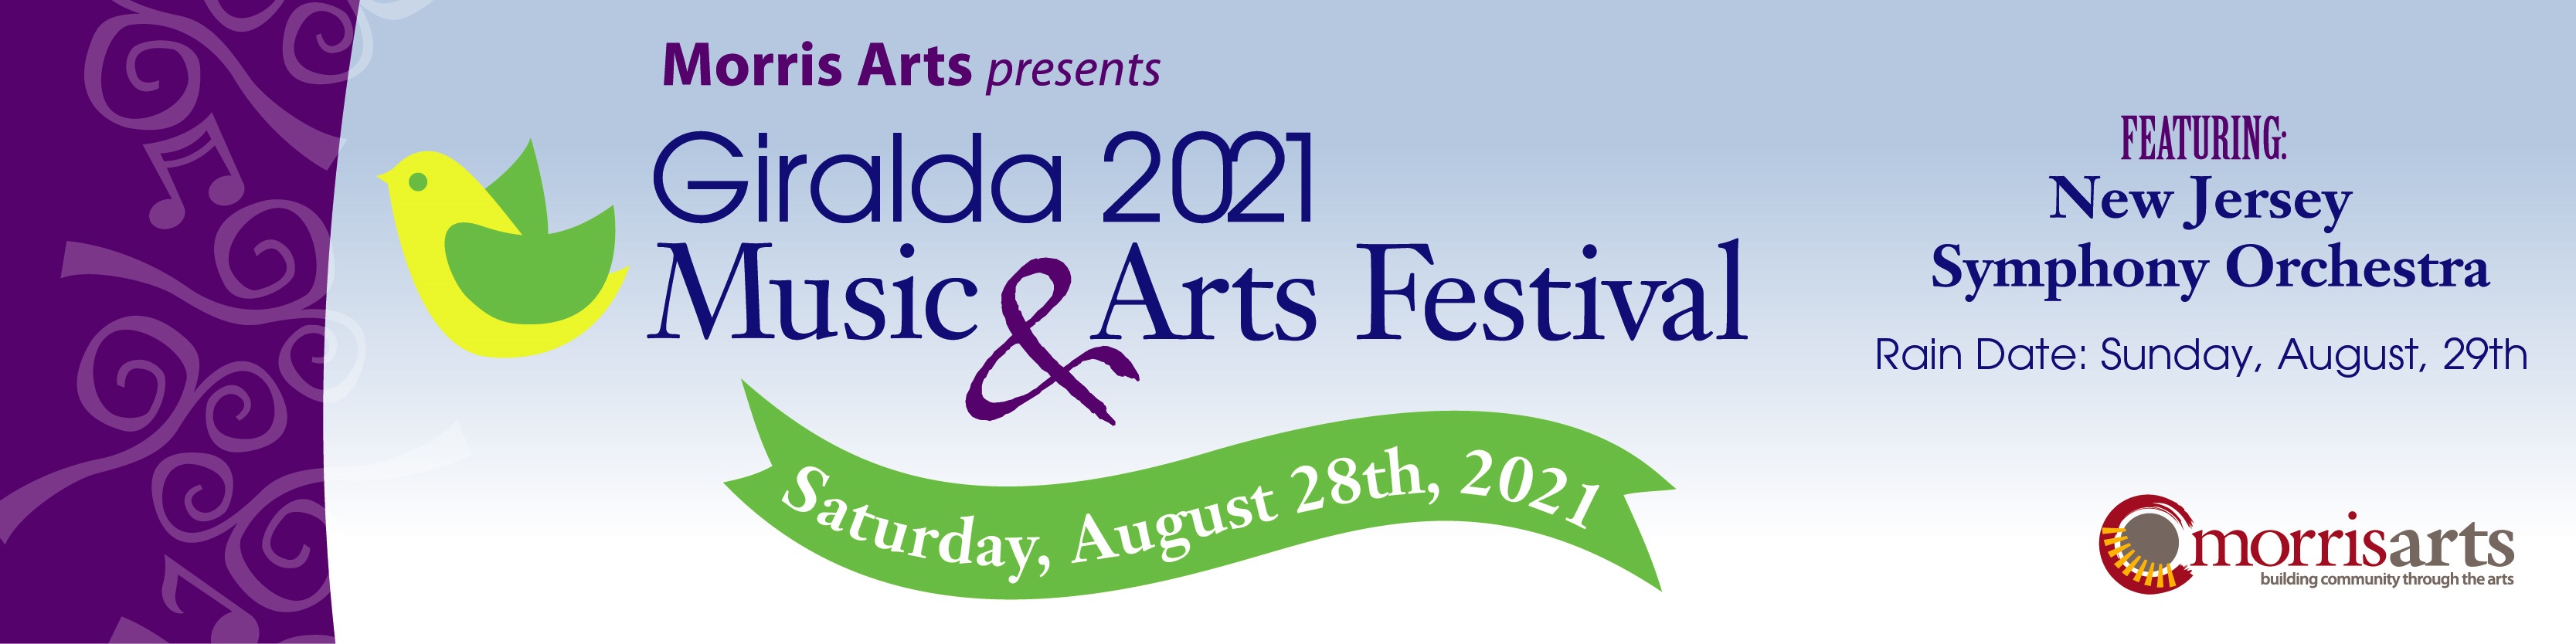 Morris Arts 2021 Festival Banner.jpg